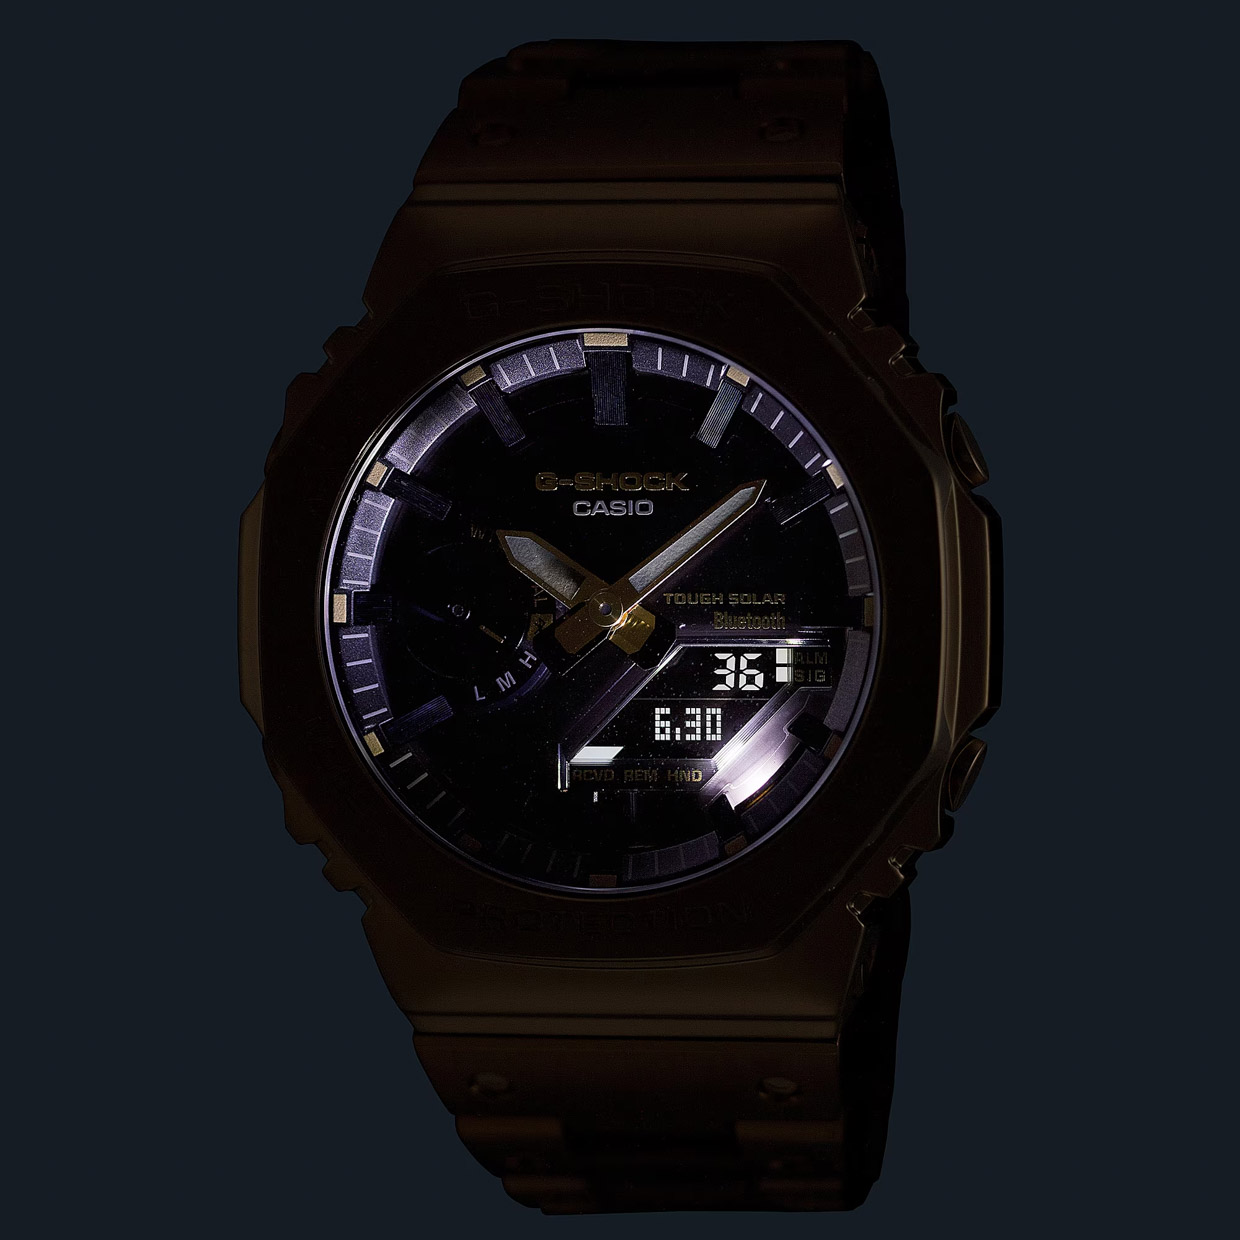 G-SHOCK Golden Full-Metal Watch